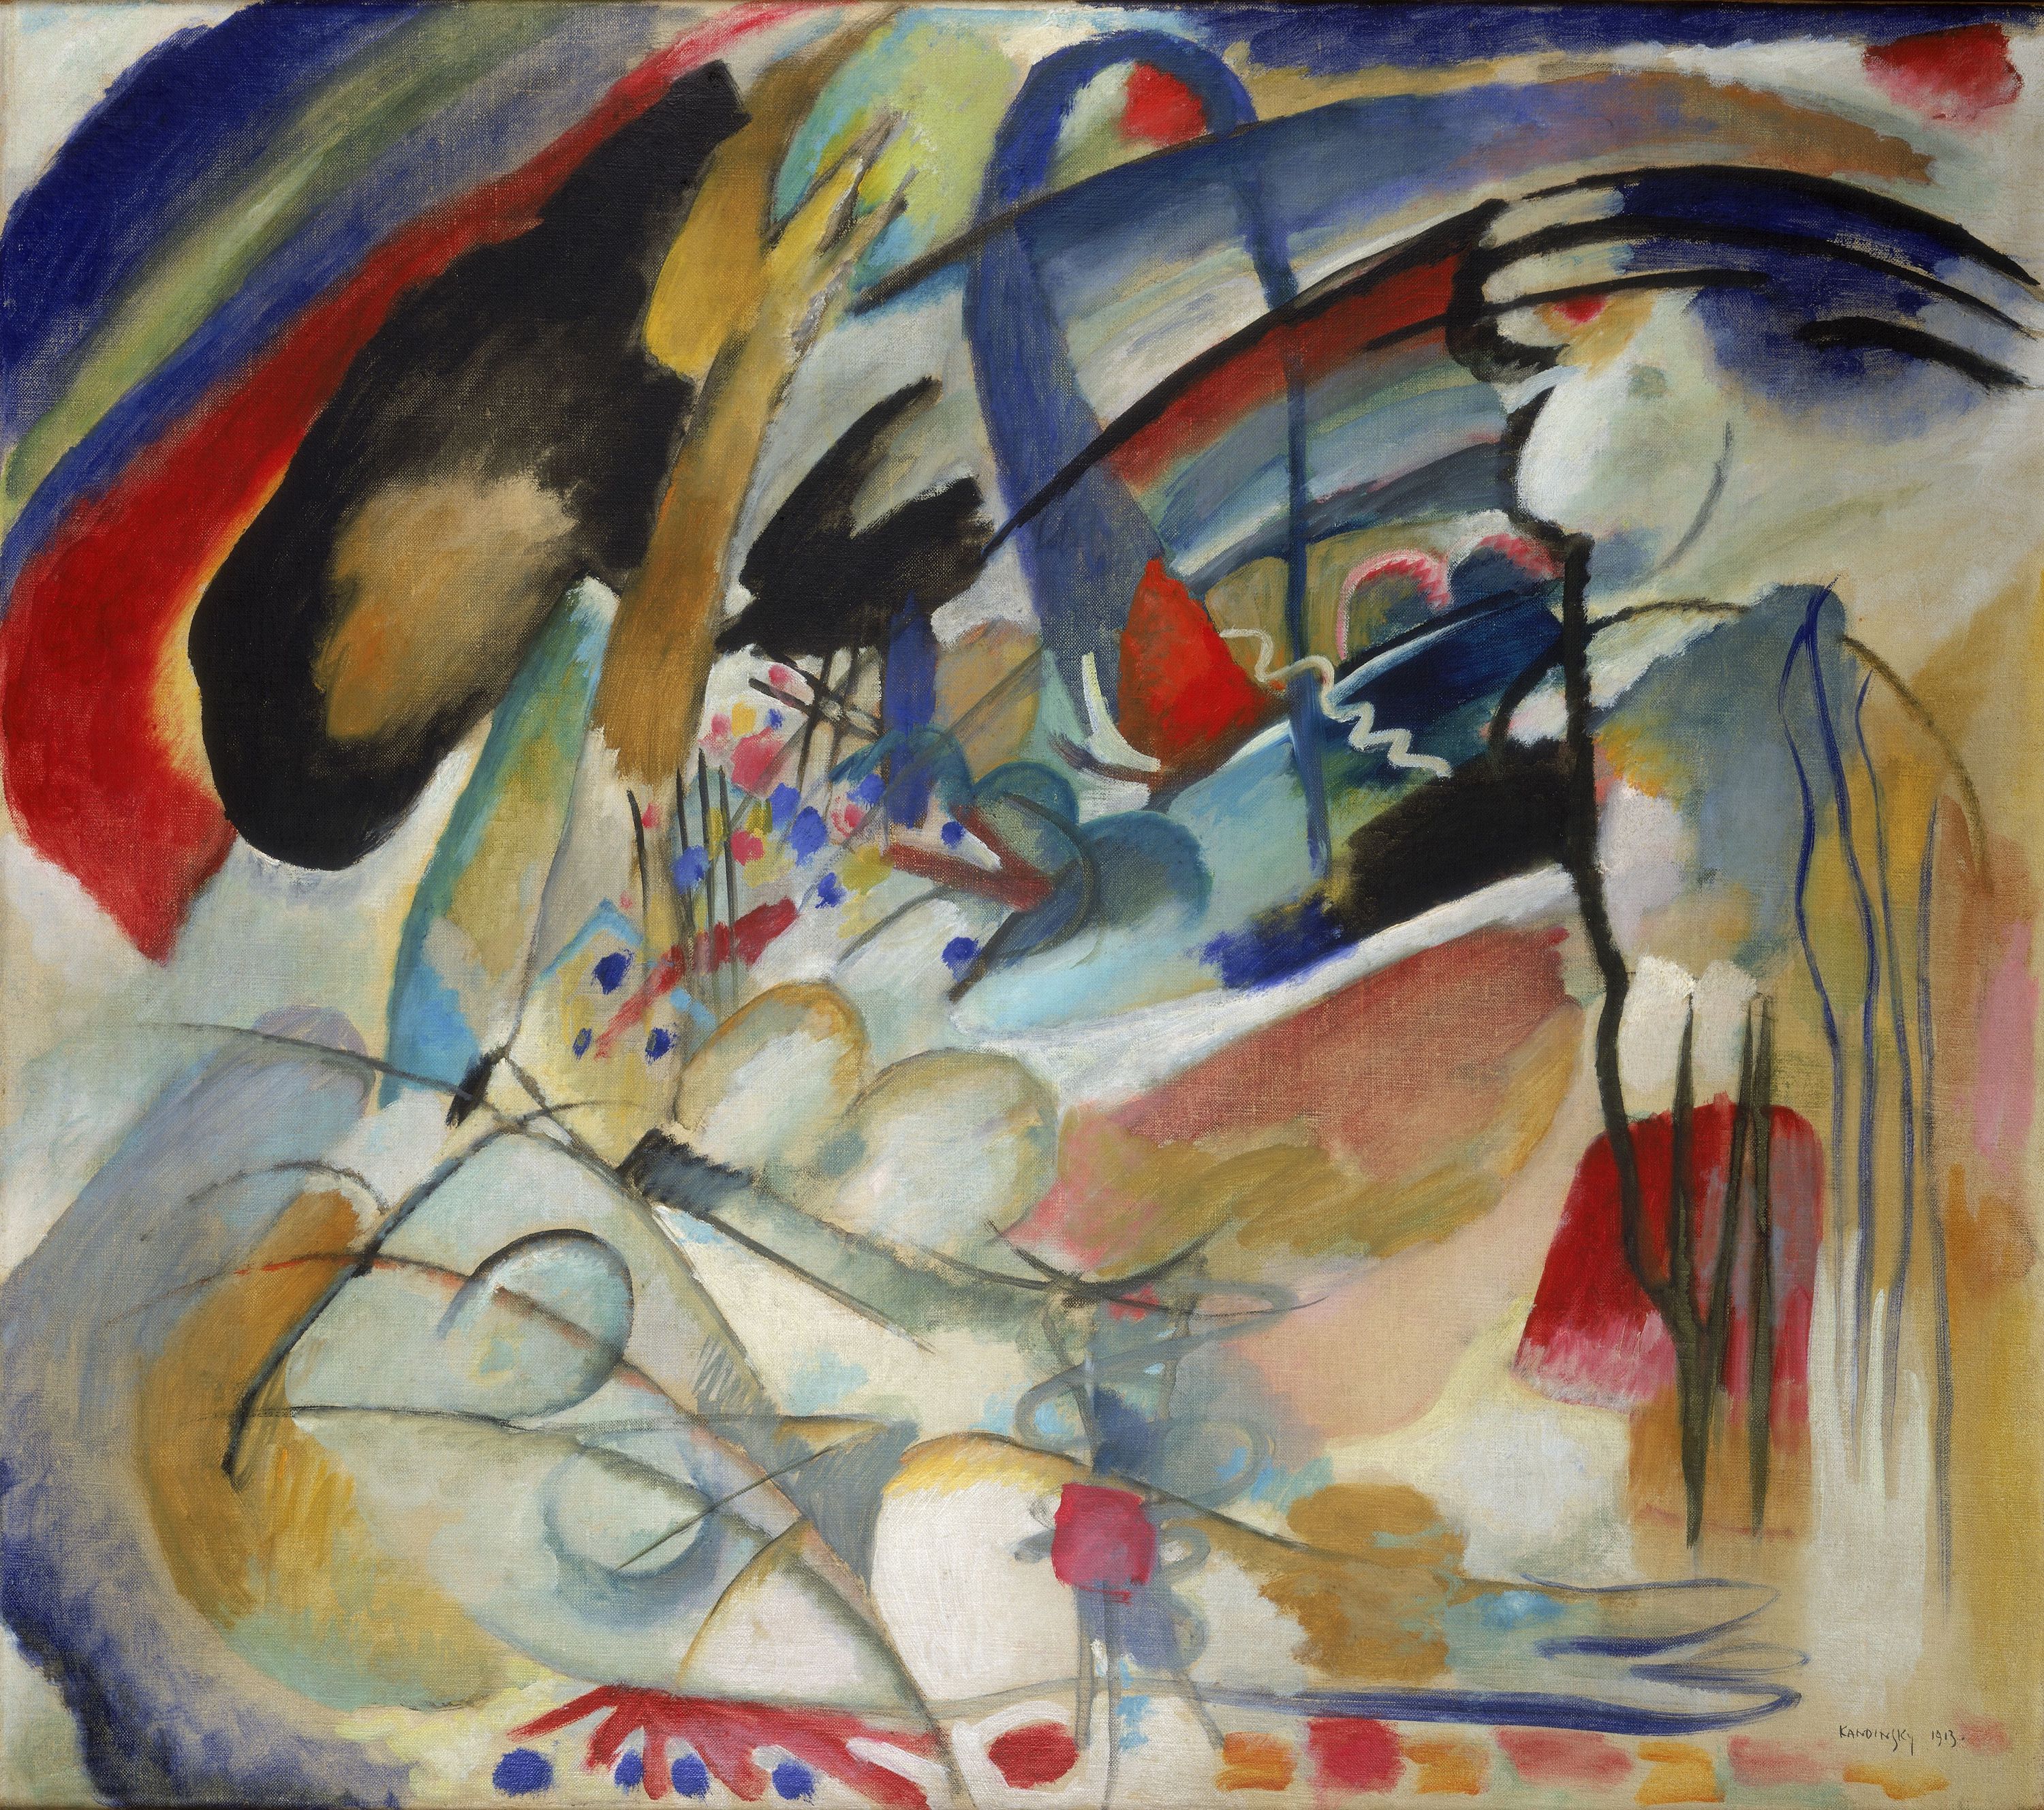 (الارتجال 33 (المشرق الأول by Wassily Kandinsky - 1913م - 88.5 x 100.5 cm 